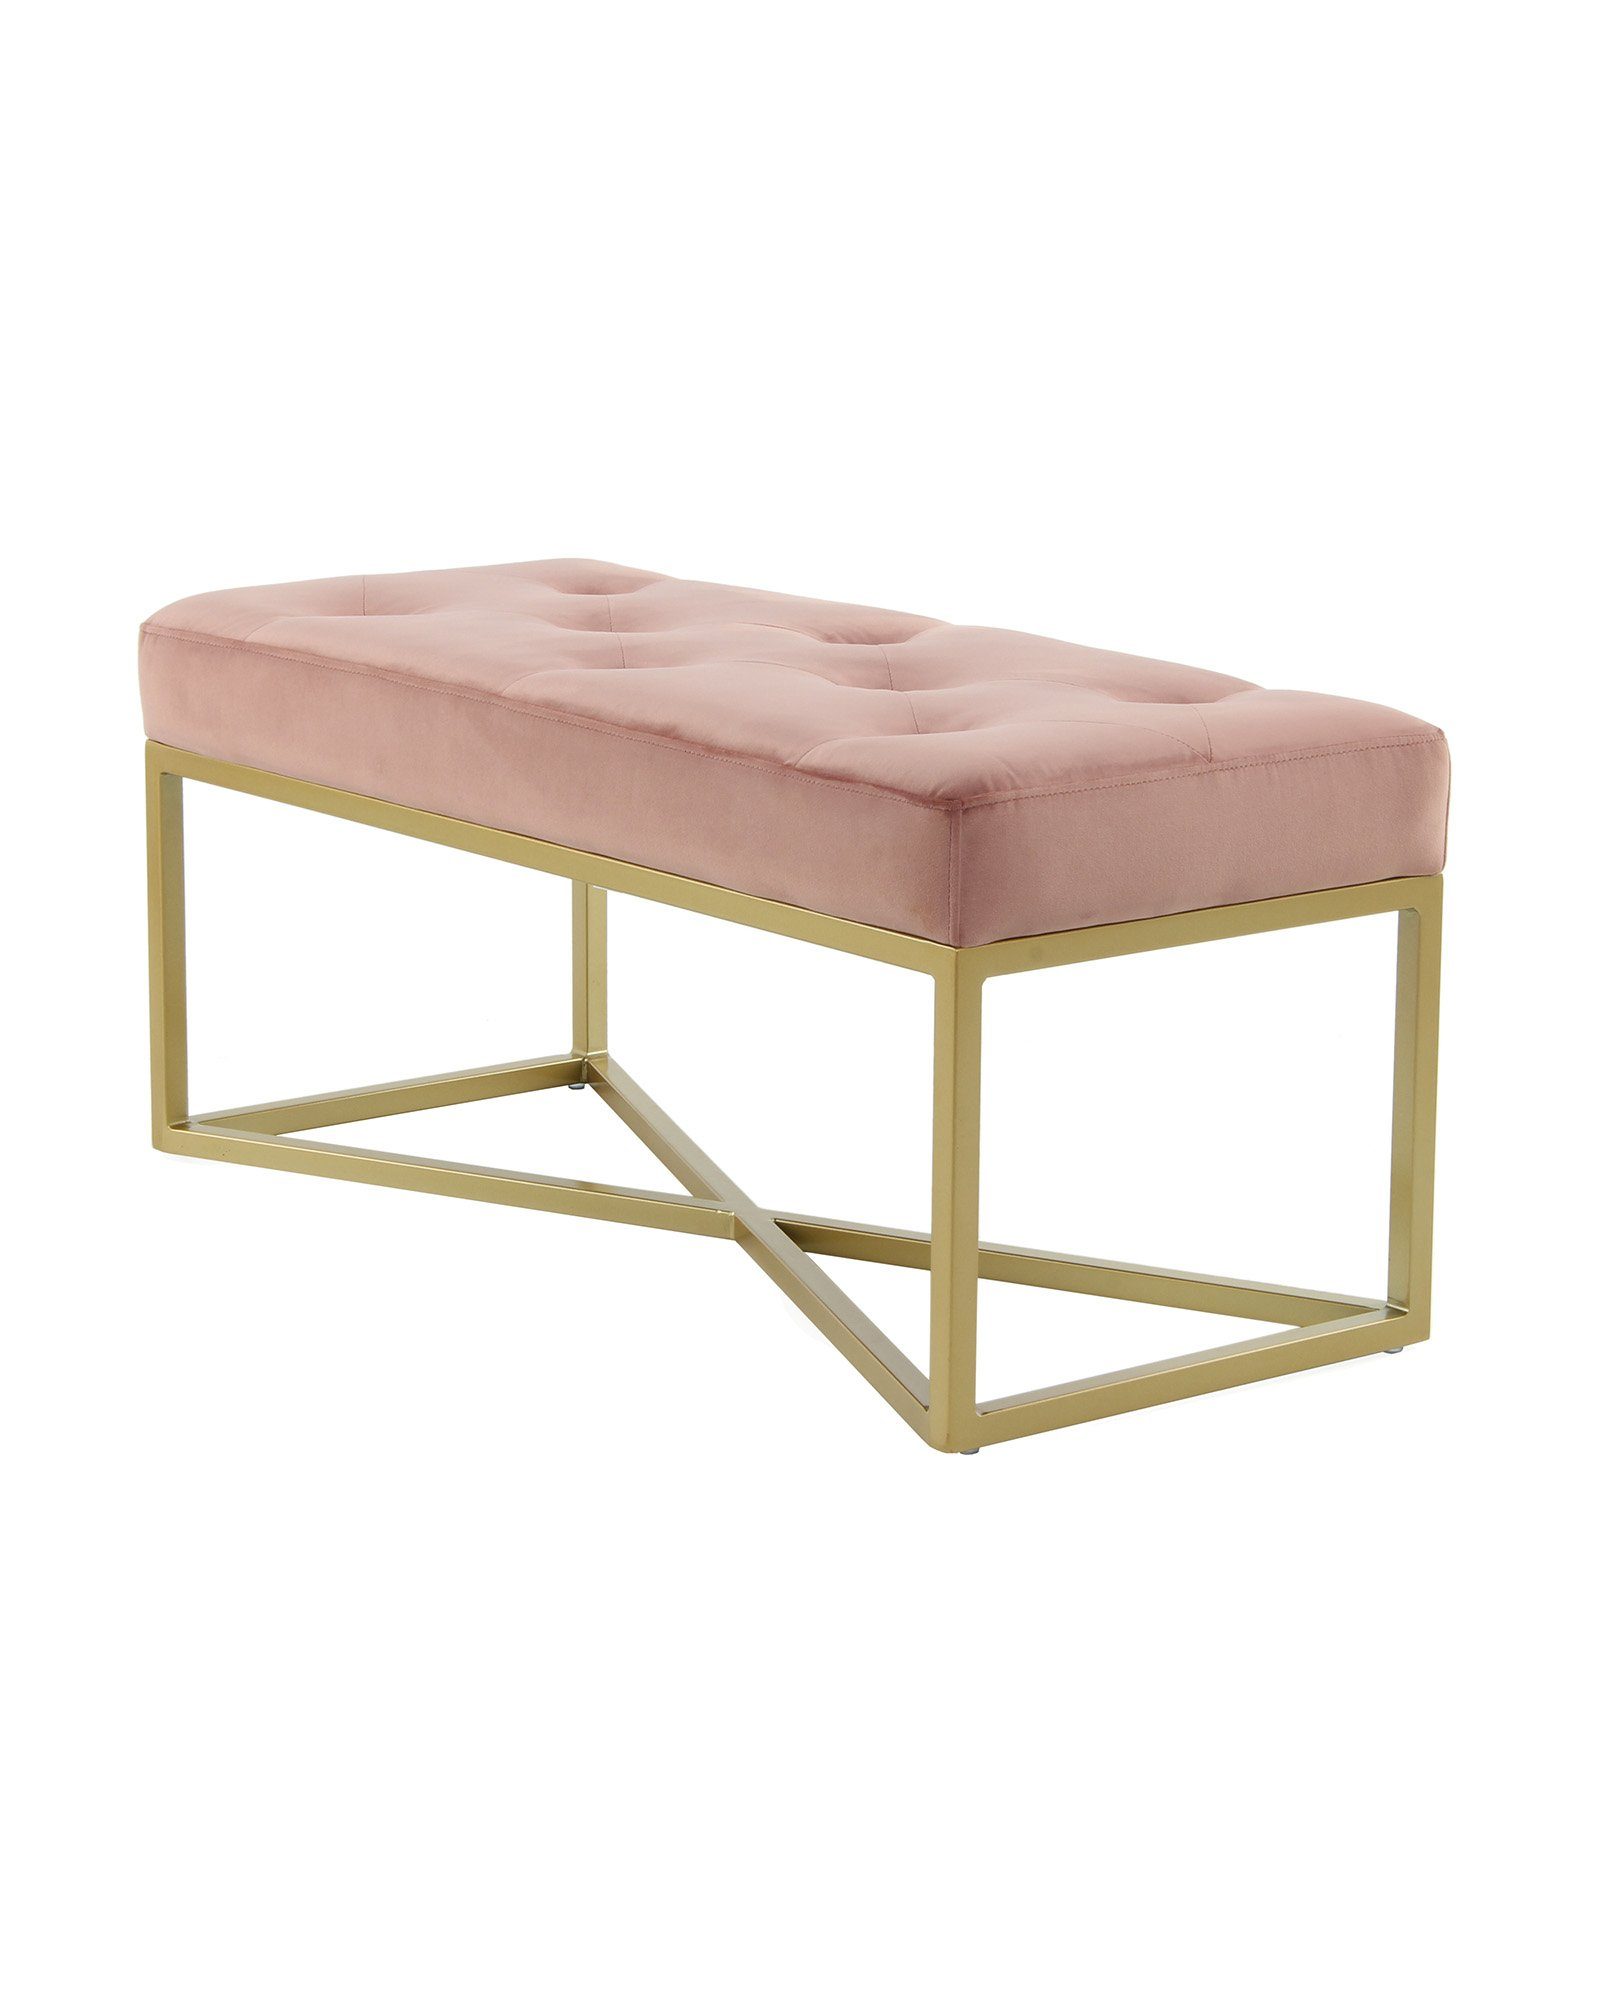 Qiyano Sitzbank Gesteppte Sitz- Polsterbank Barock-Stil Samt mit goldenen Metallfüßen Rosa | Sitzbänke